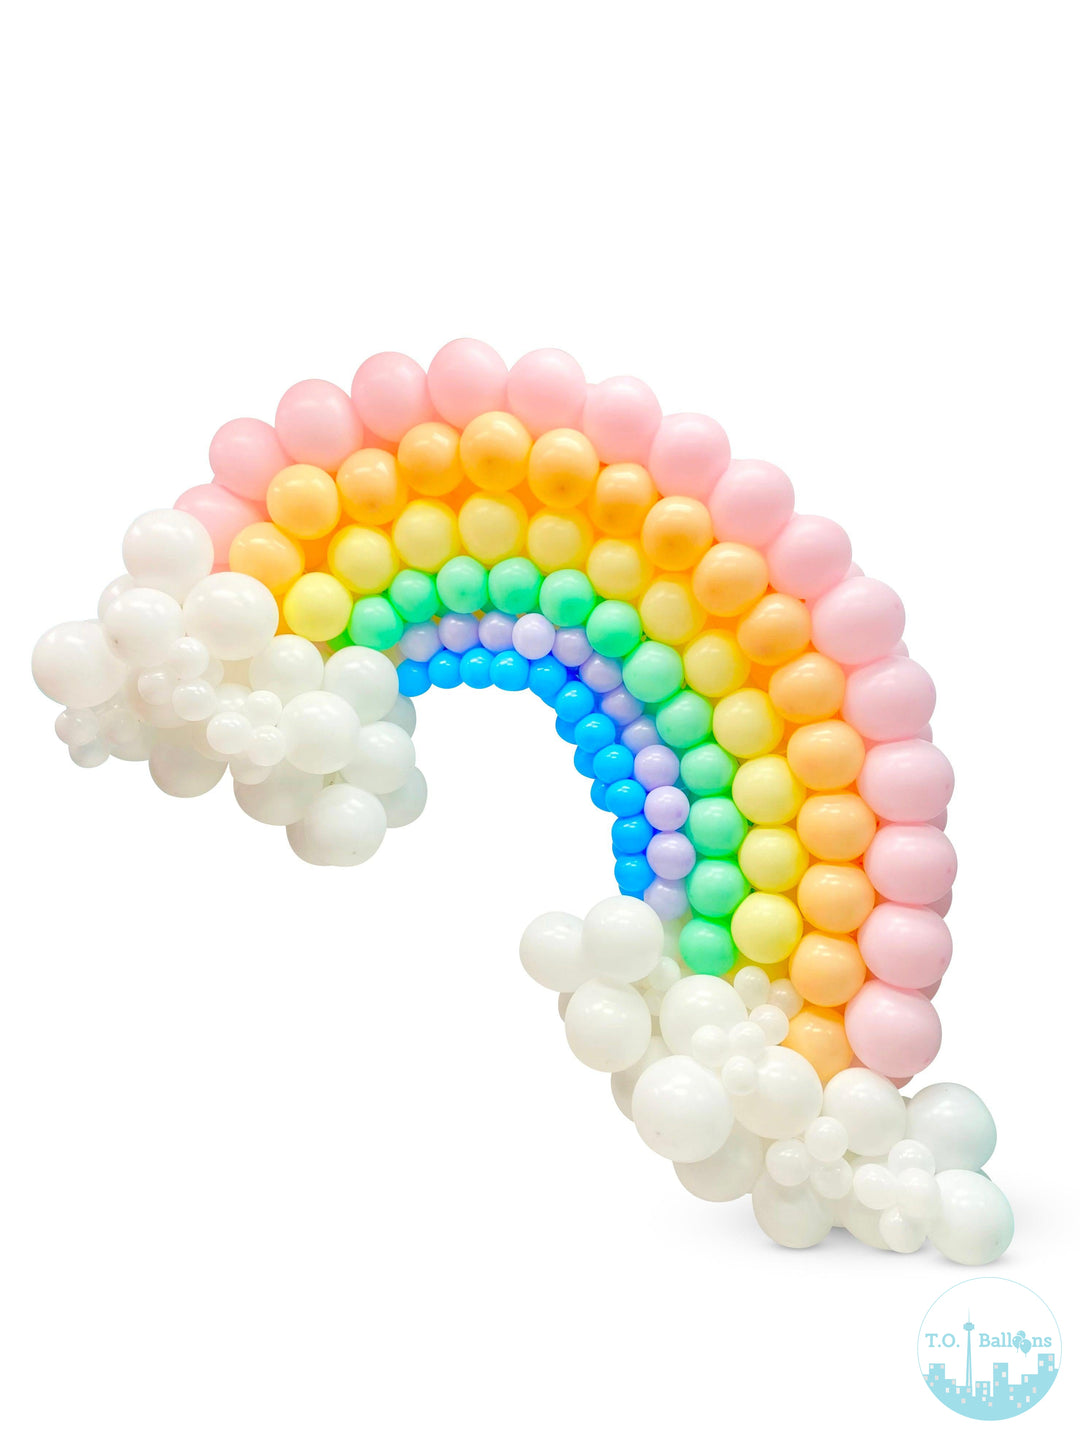 Rainbow Balloons -Toronto Balloons